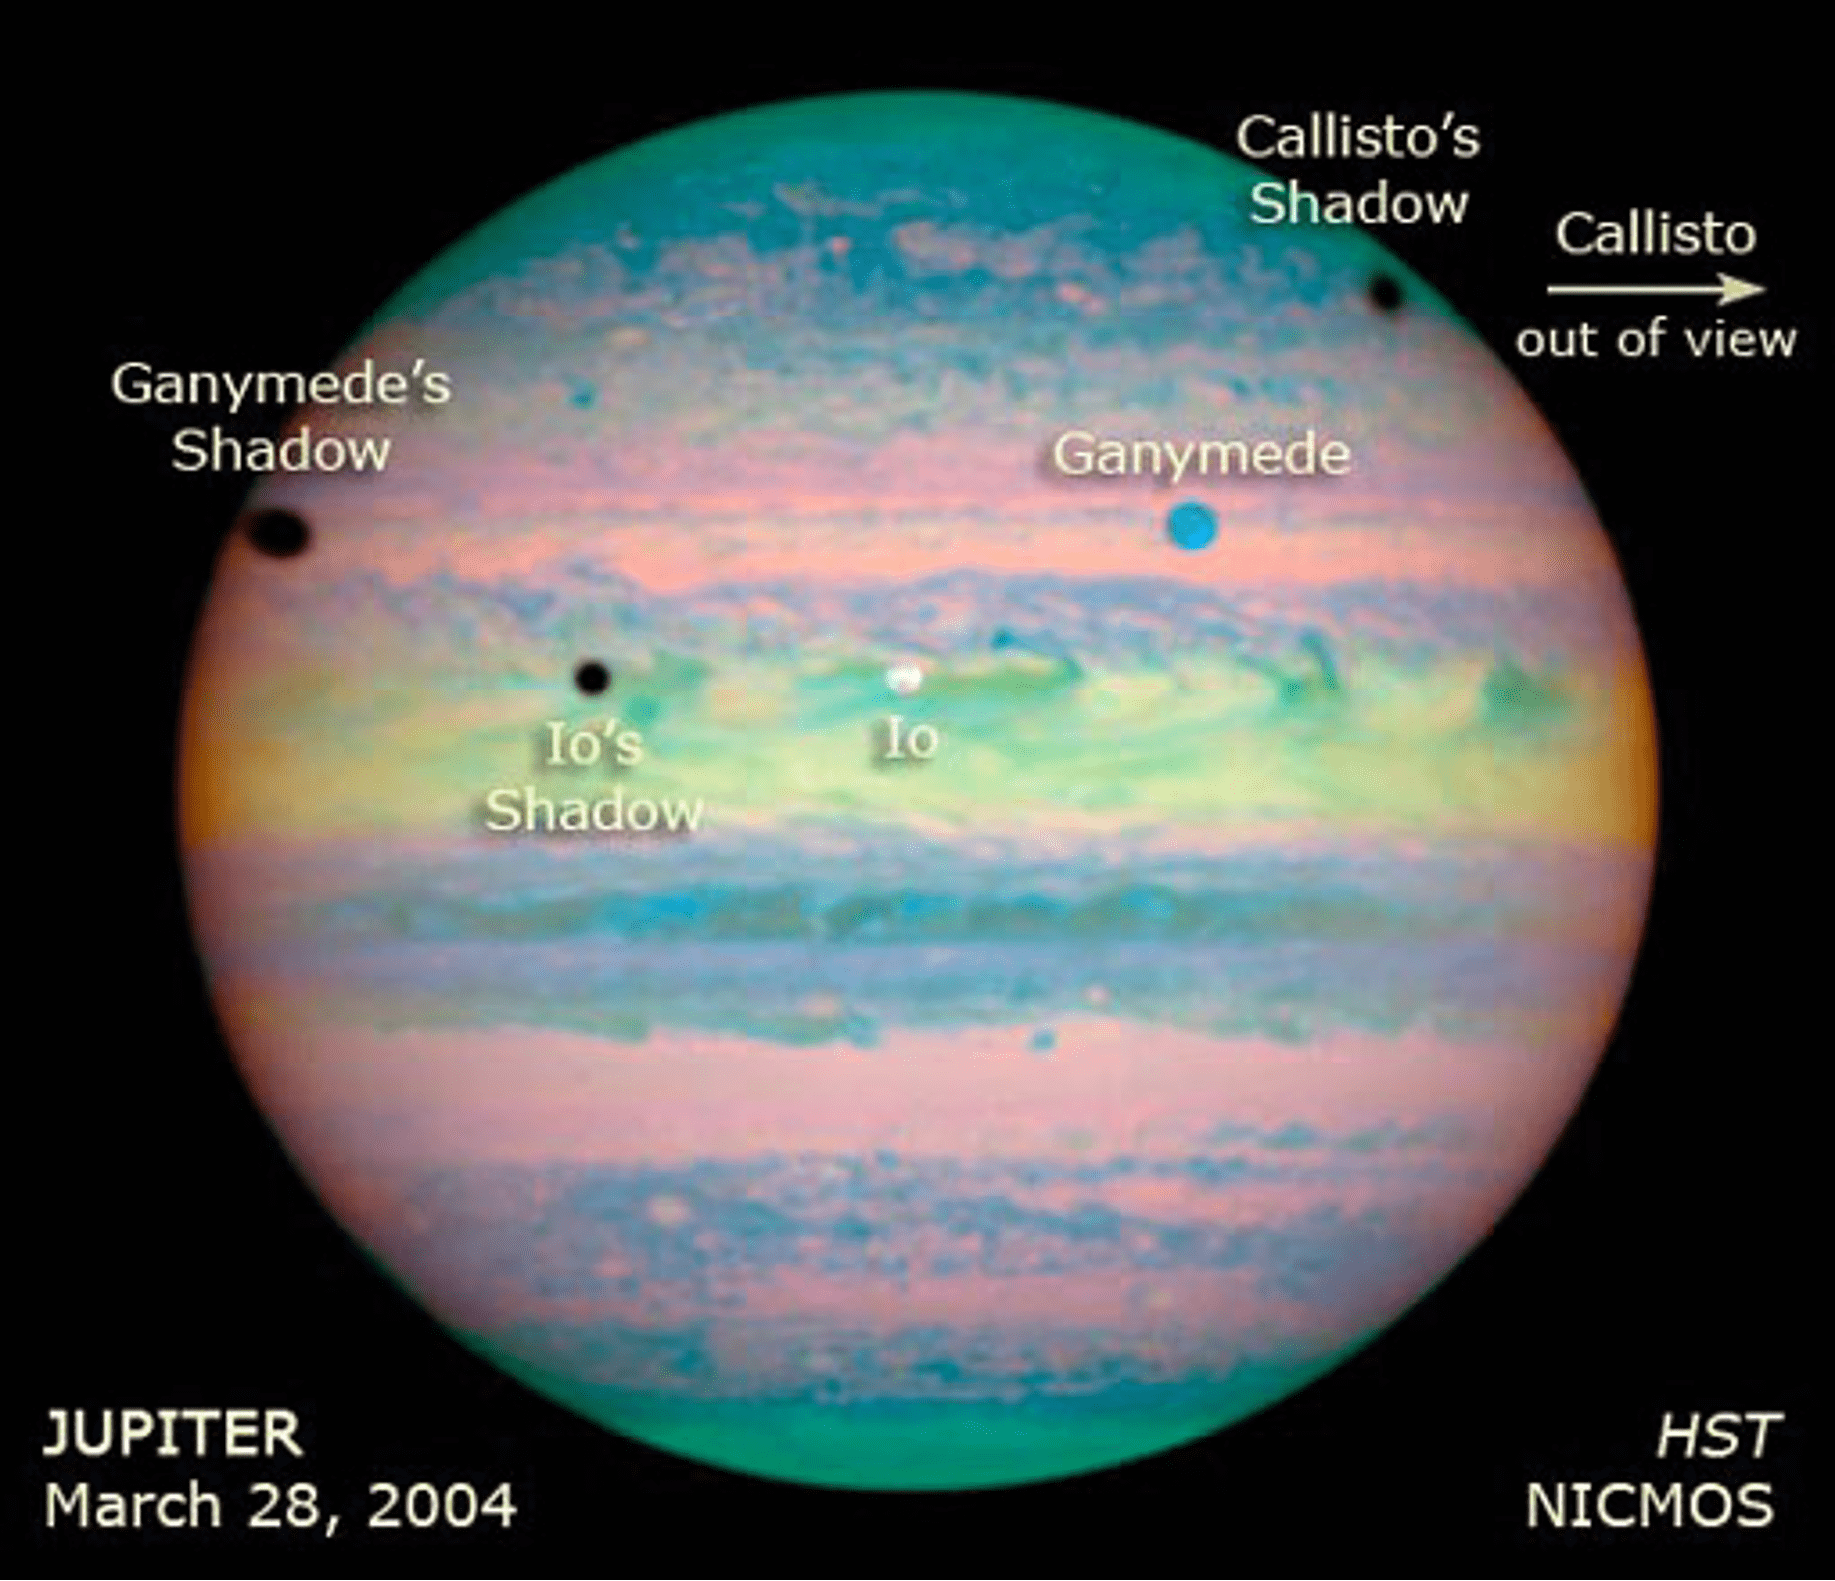 La sombra de Io se encuentra justo encima del centro y a la izquierda, Ganímedes sobre el borde izquierdo del planeta, y Calisto cerca del borde derecho. Sólo dos de las lunas, sin embargo, son visibles en esta imagen. Io es el círculo blanco en el centro de la imagen, y Ganímedes es el círculo azul en la parte superior derecha. Callisto está fuera de la imagen y a la derecha. E. Karkoschka, universidad de Arizona.